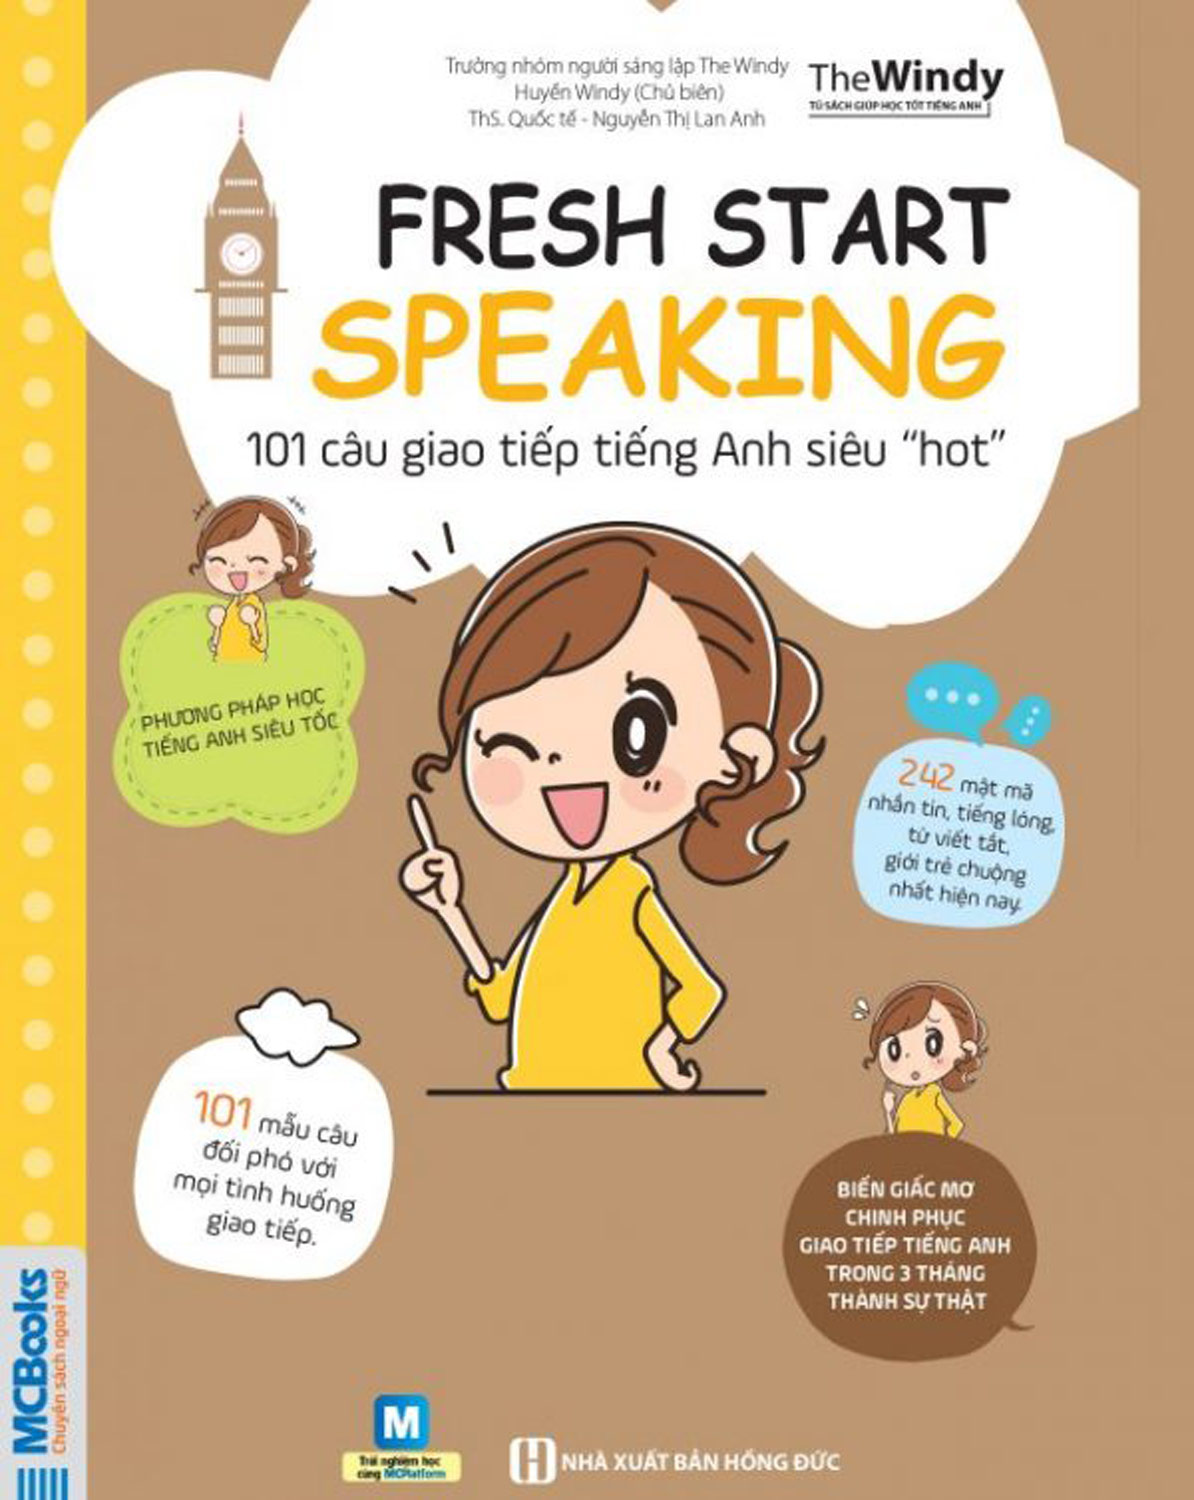 101 Câu Giao Tiếp Tiếng Anh Siêu “Hot” (Fresh Start Speaking)